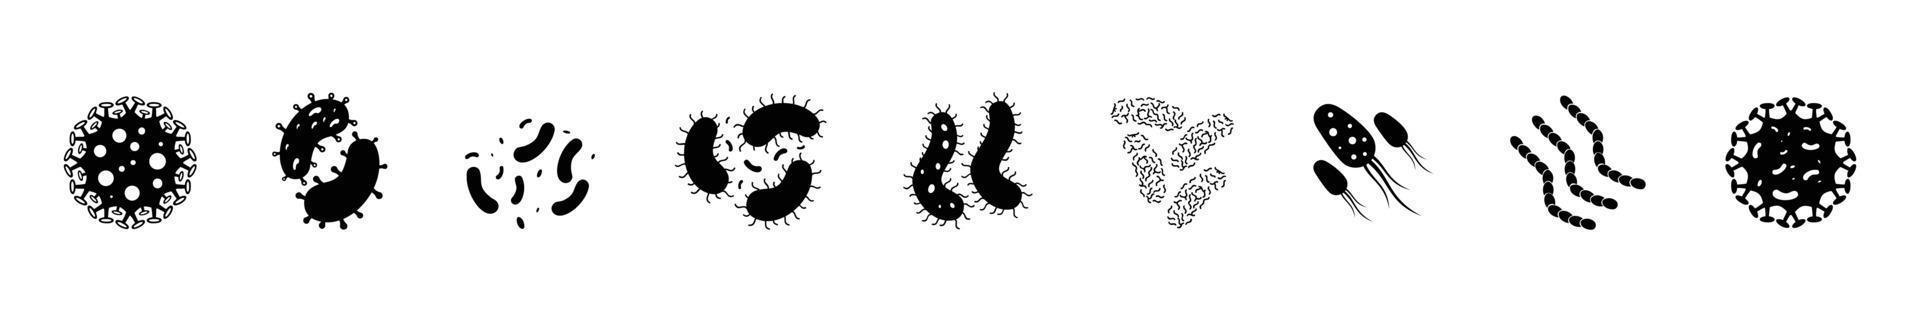 ensemble de bactéries d'icône d'illustration vectorielle, virus, colonie de bactéries, signe de microbiologie, ingrédient de nutrition saine vecteur